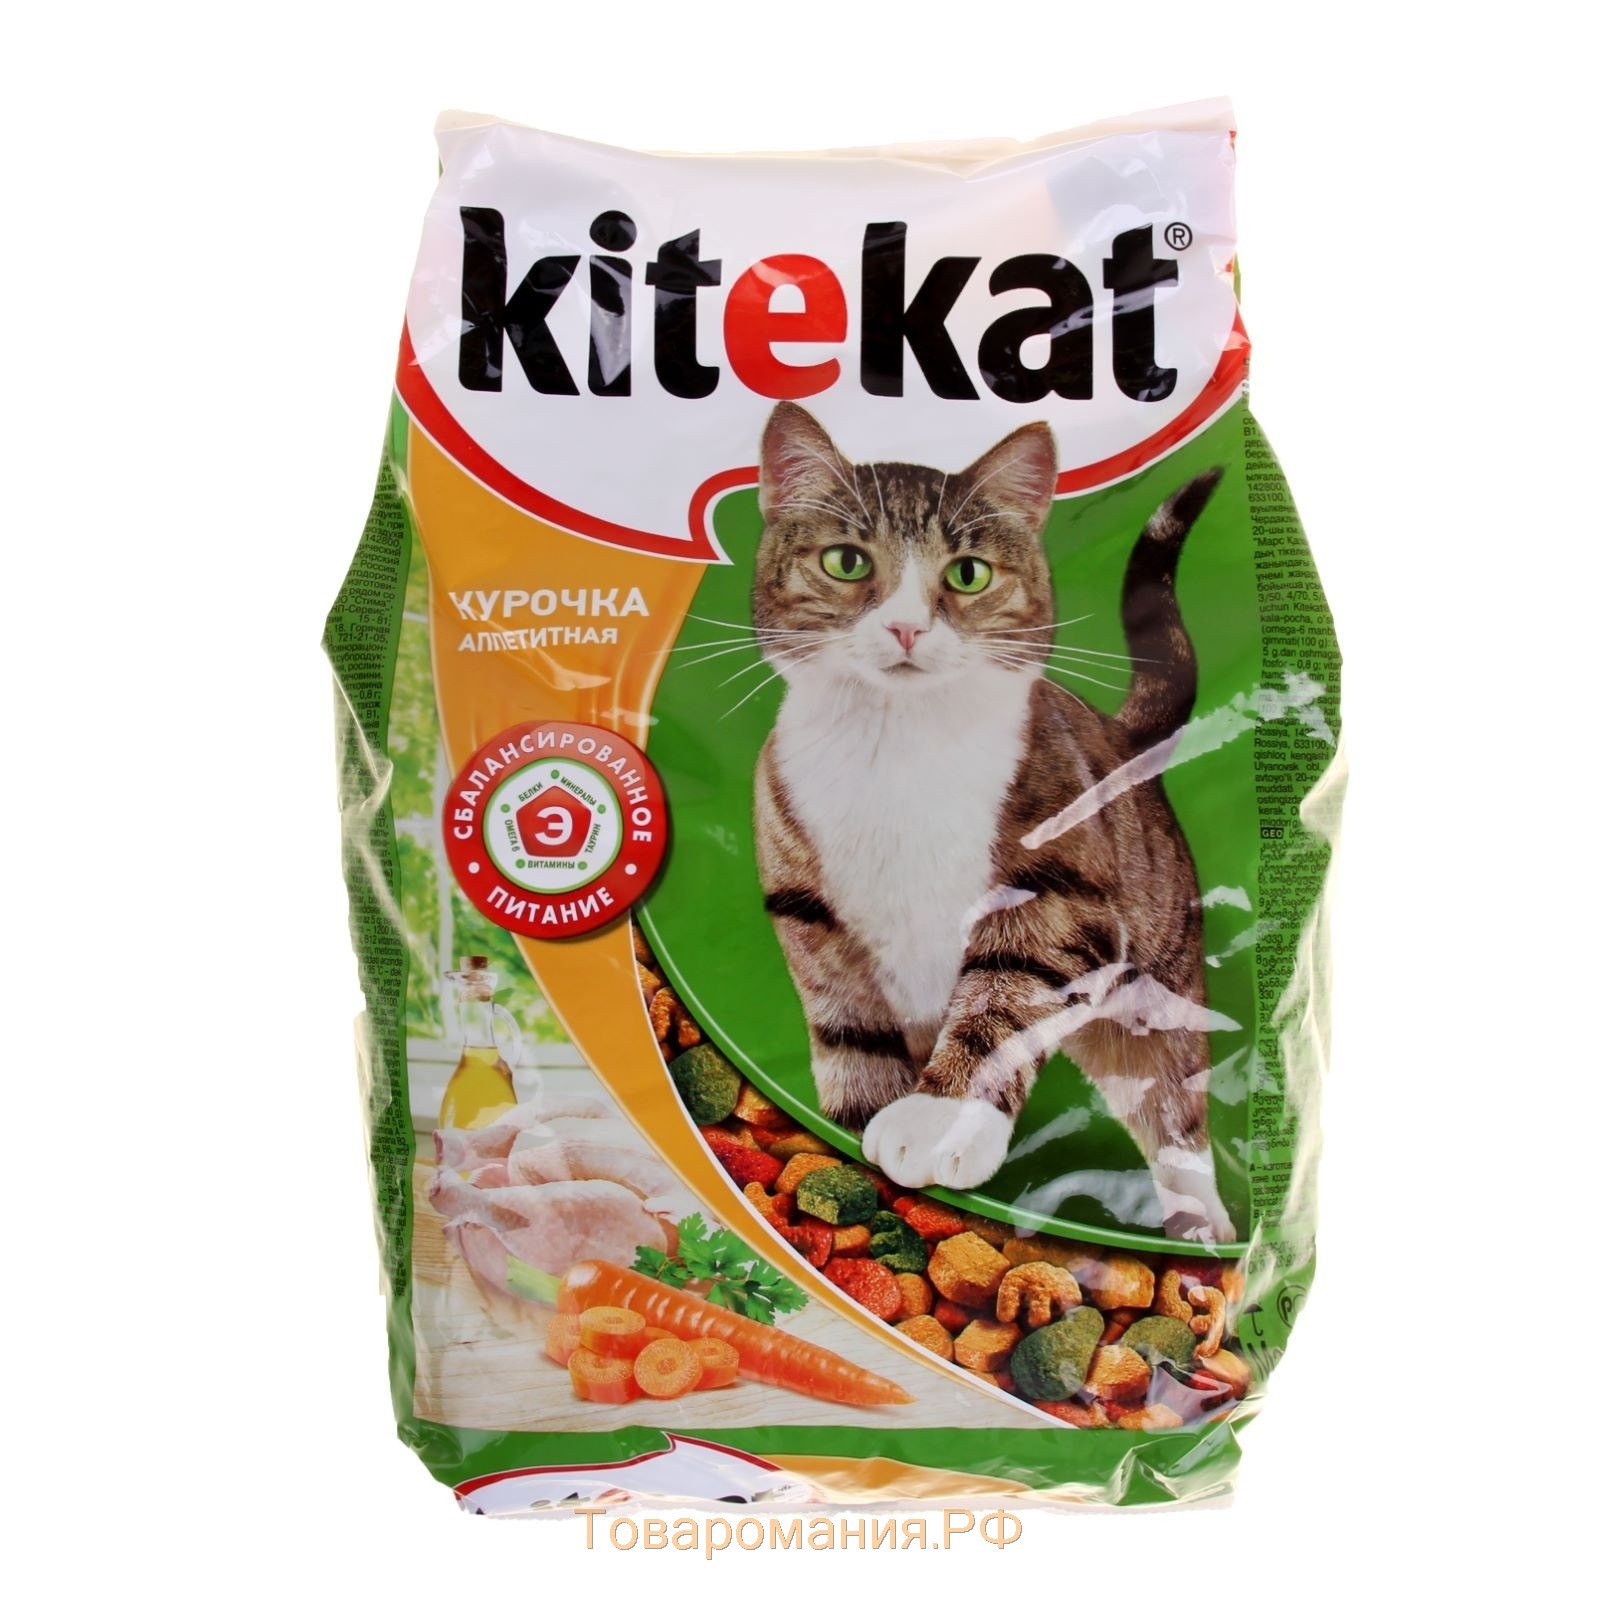 Китикет корм для кошек купить. Китекат сухой корм для кошек. Сухой корм для кошек Китекат 1.9 кг. Вес Китекат сухой корм. Kitekat корм для кошек 1,9.